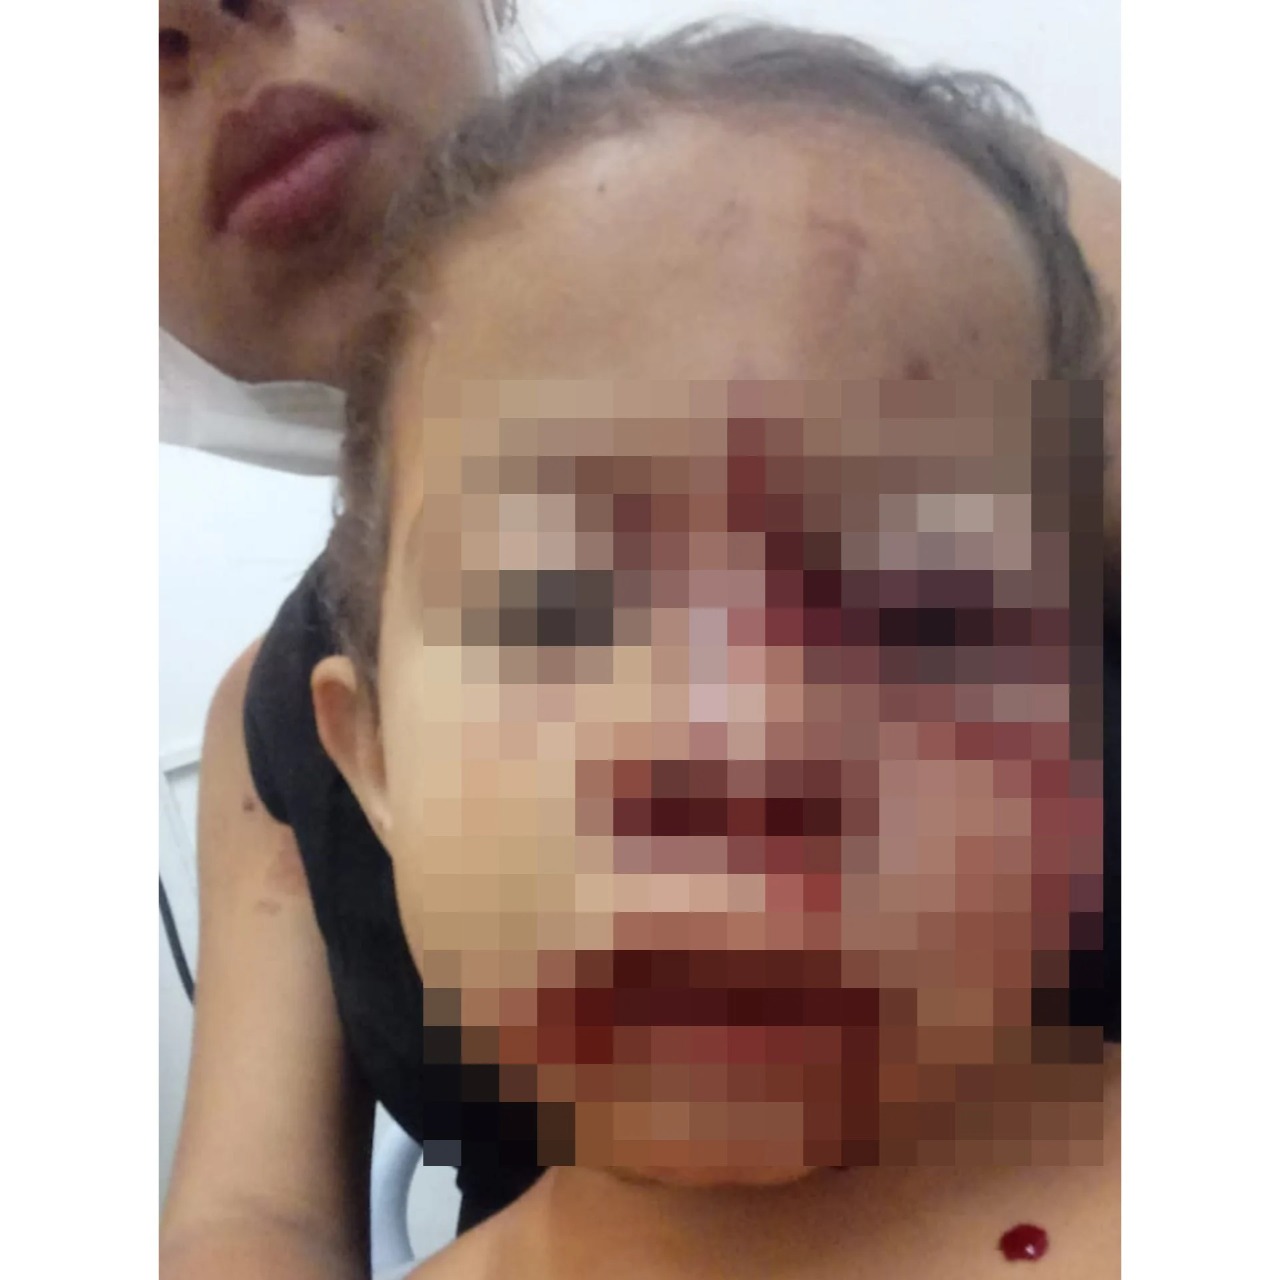 Criança ficou com o rosto desfigurado após ser atacada por cachorro (Foto: Reprodução)